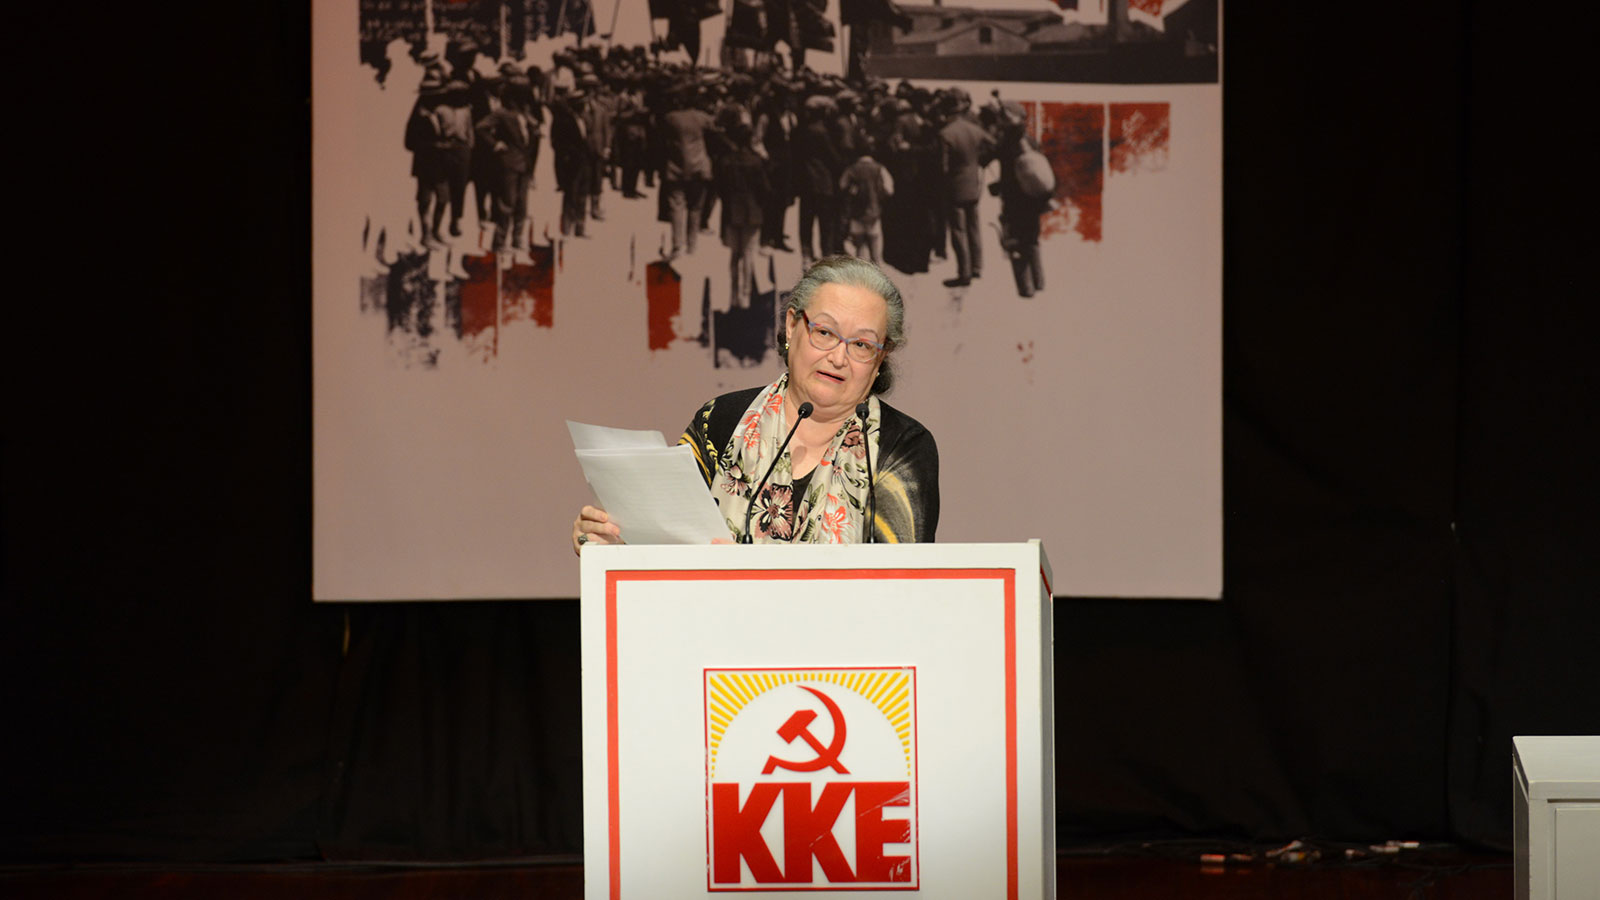 5ο Επιστημονικό Συνέδριο του ΚΚΕ: «Δημιουργώντας τις προϋποθέσεις για την κομμουνιστική παρέμβαση στη σύγχρονη λογοτεχνία»